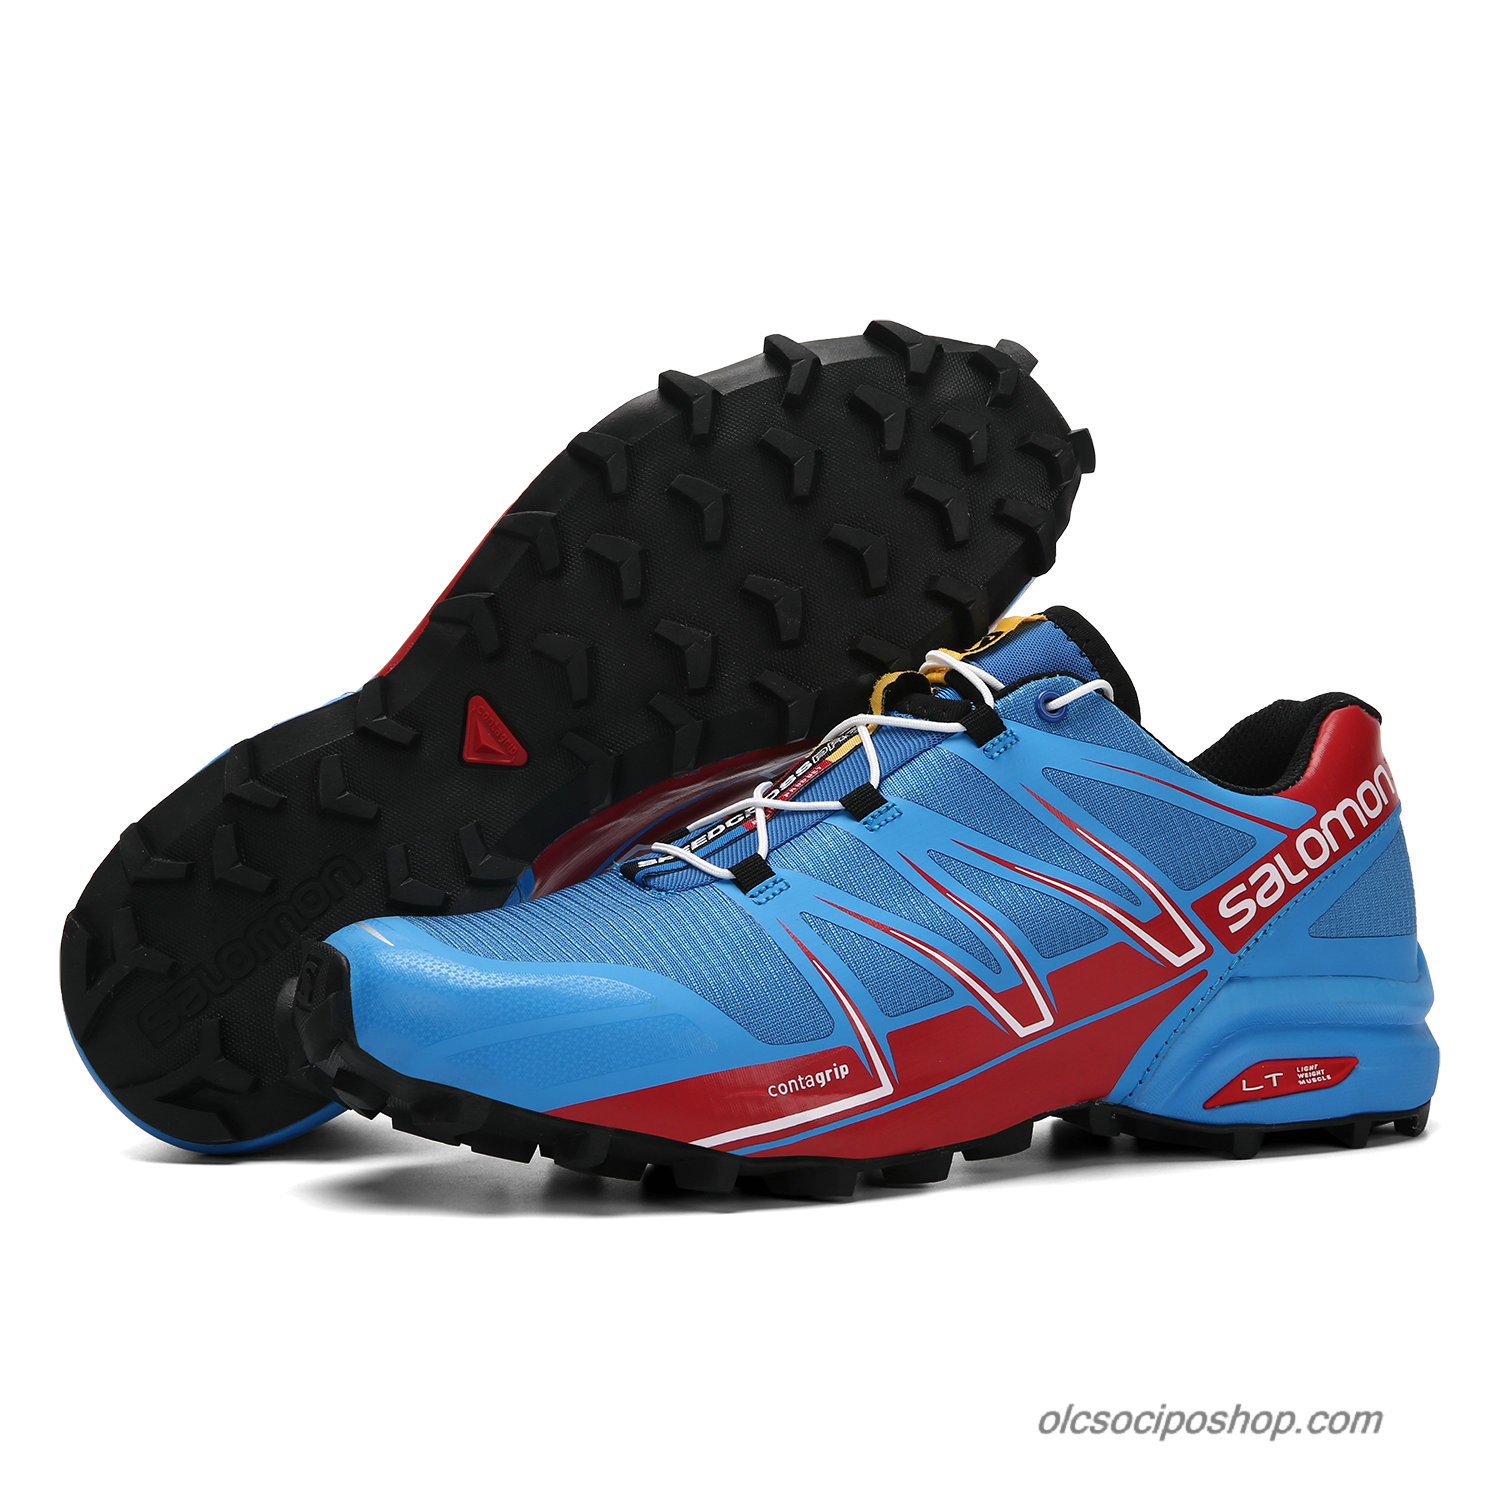 Férfi Salomon Speedcross PRO Kék/Piros/Fekete Cipők - Kattintásra bezárul